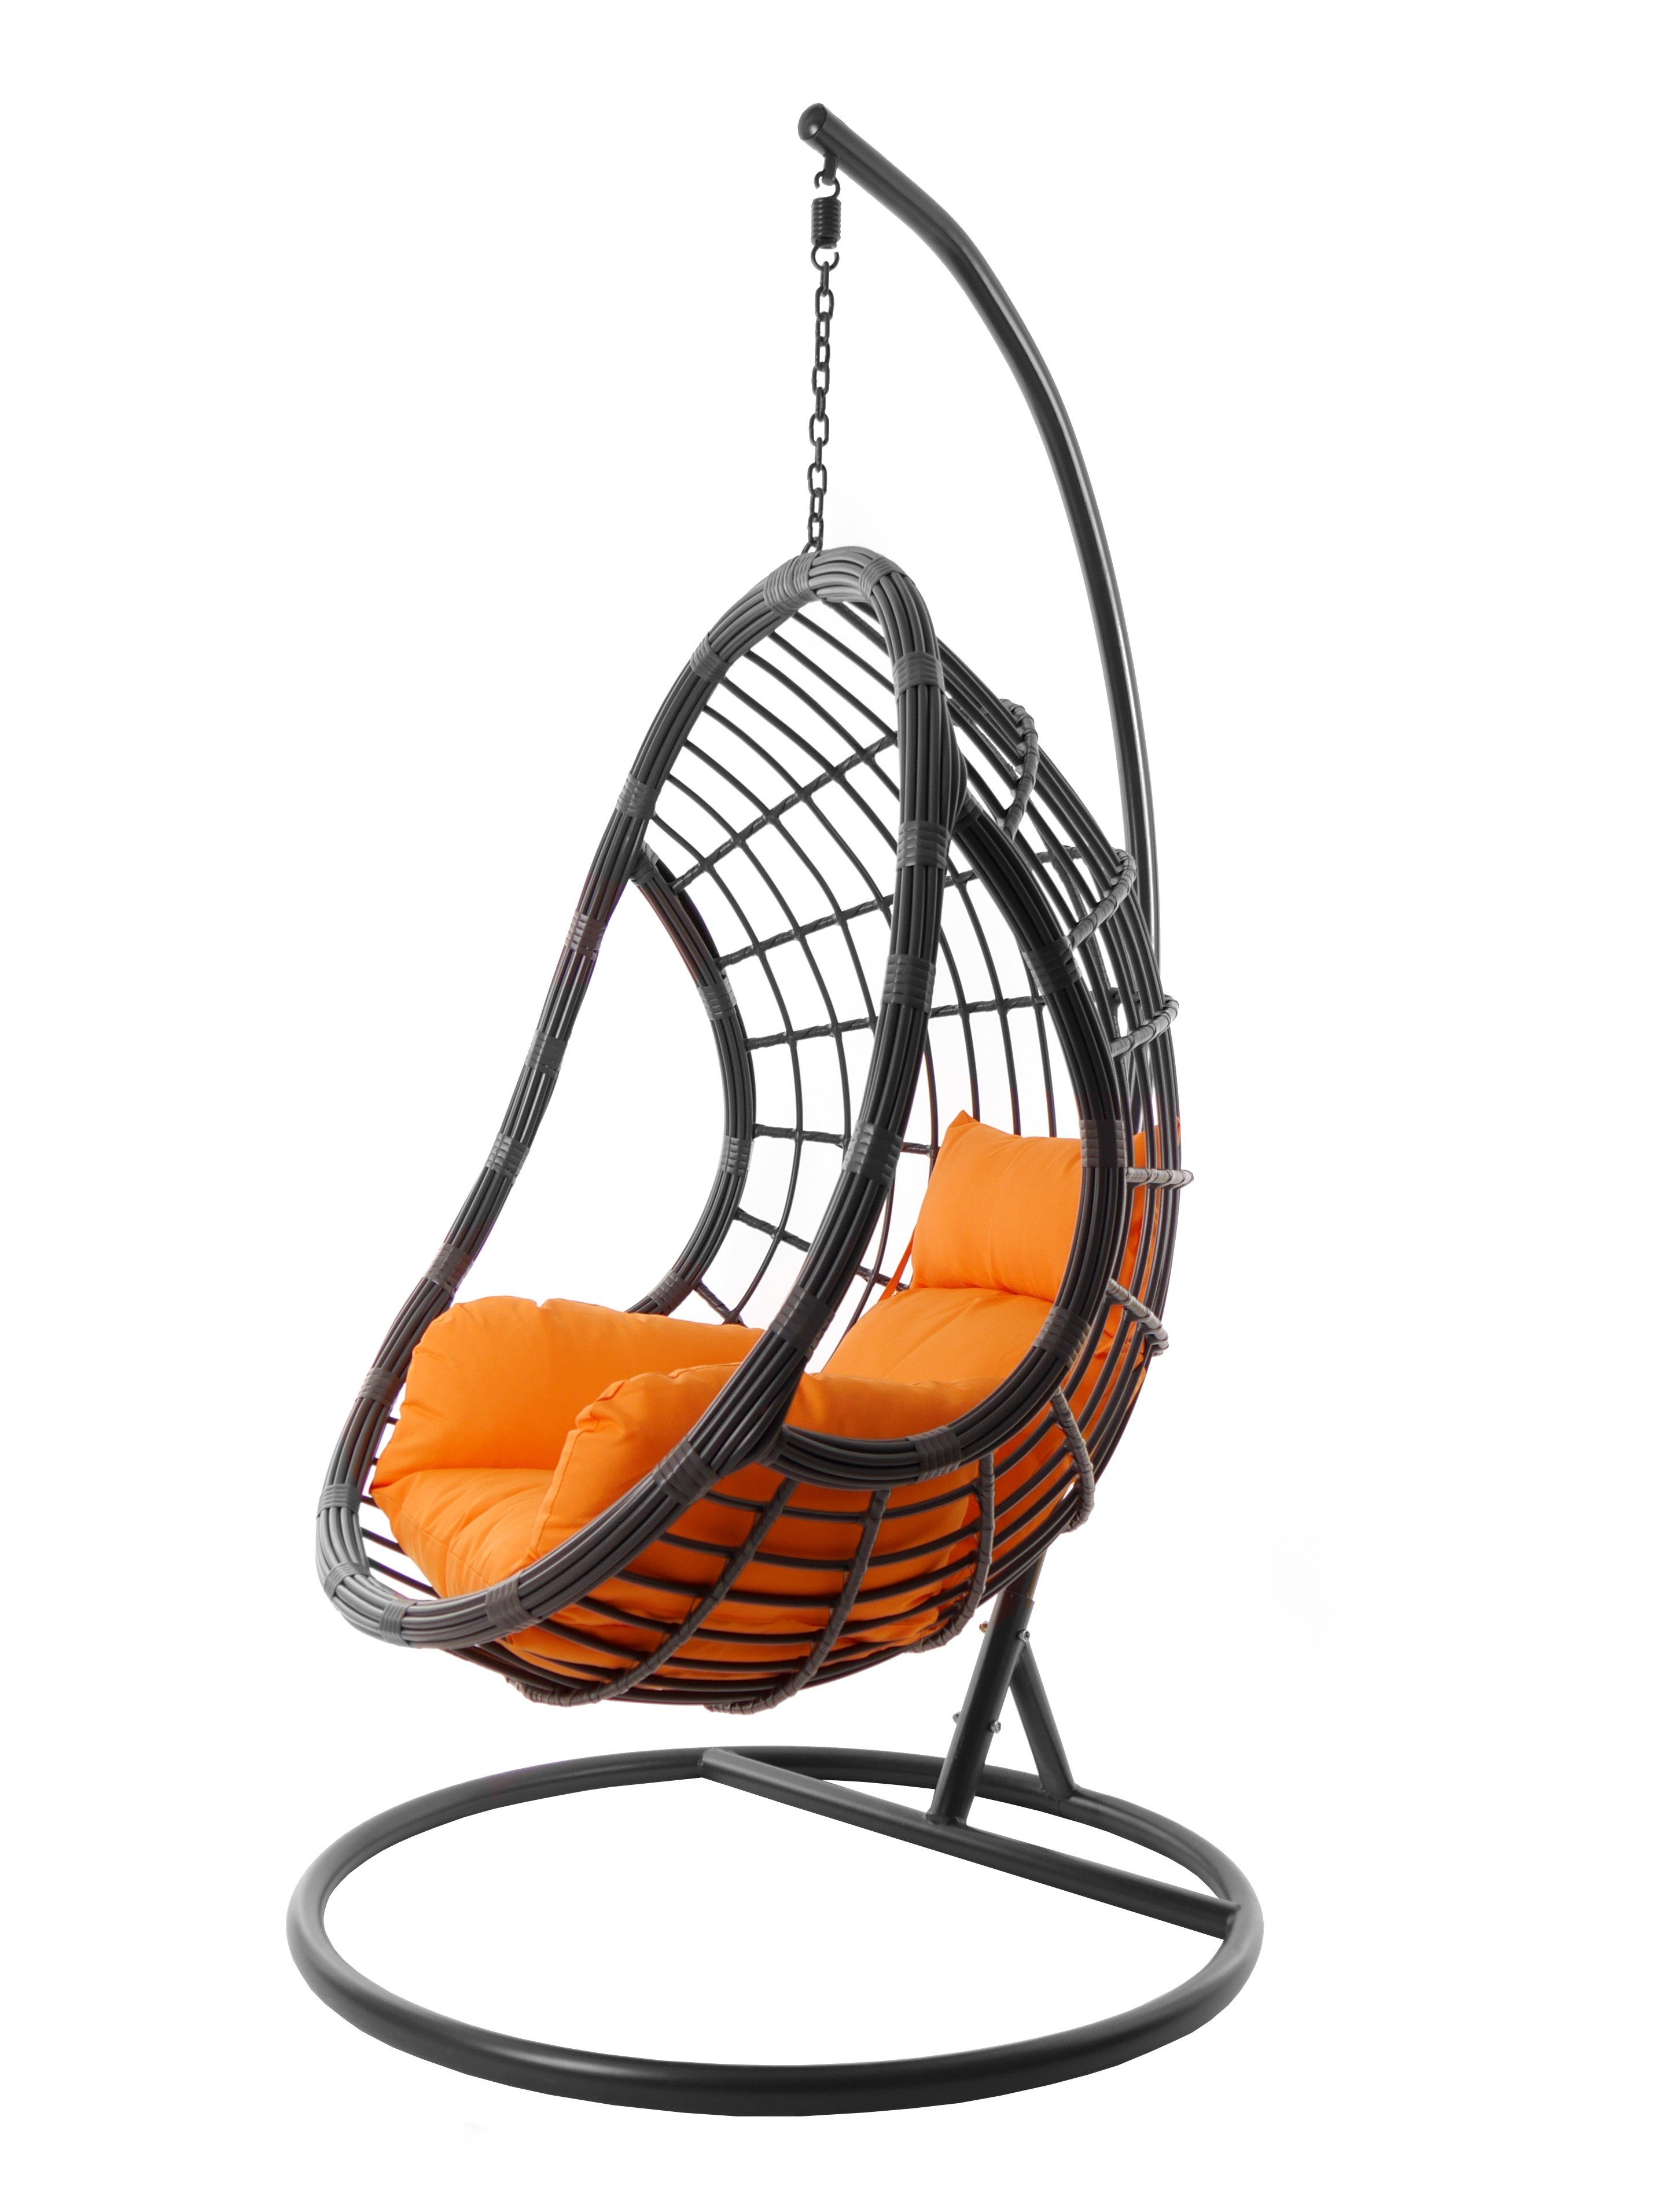 KIDEO Hängesessel Hängesessel PALMANOVA grau, Hängestuhl mit Gestell und Kissen, moderne Loungemöbel in grau, farbige Nest-Kissen orange (3030 tangerine)